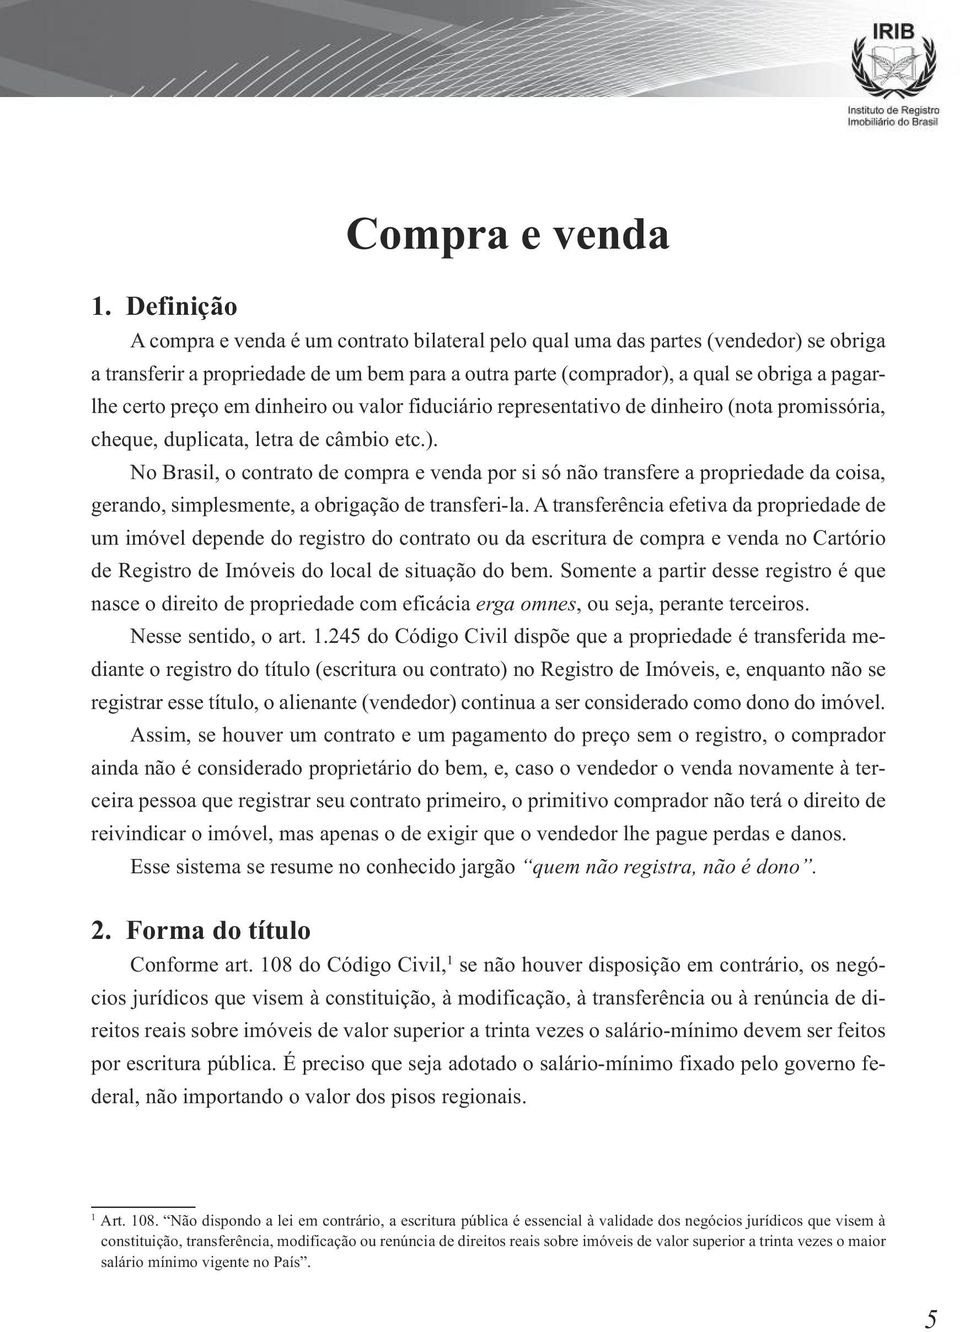 No Brasil, o contrato de compra e venda por si só não transfere a propriedade da coisa, gerando, simplesmente, a obrigação de transferi-la.